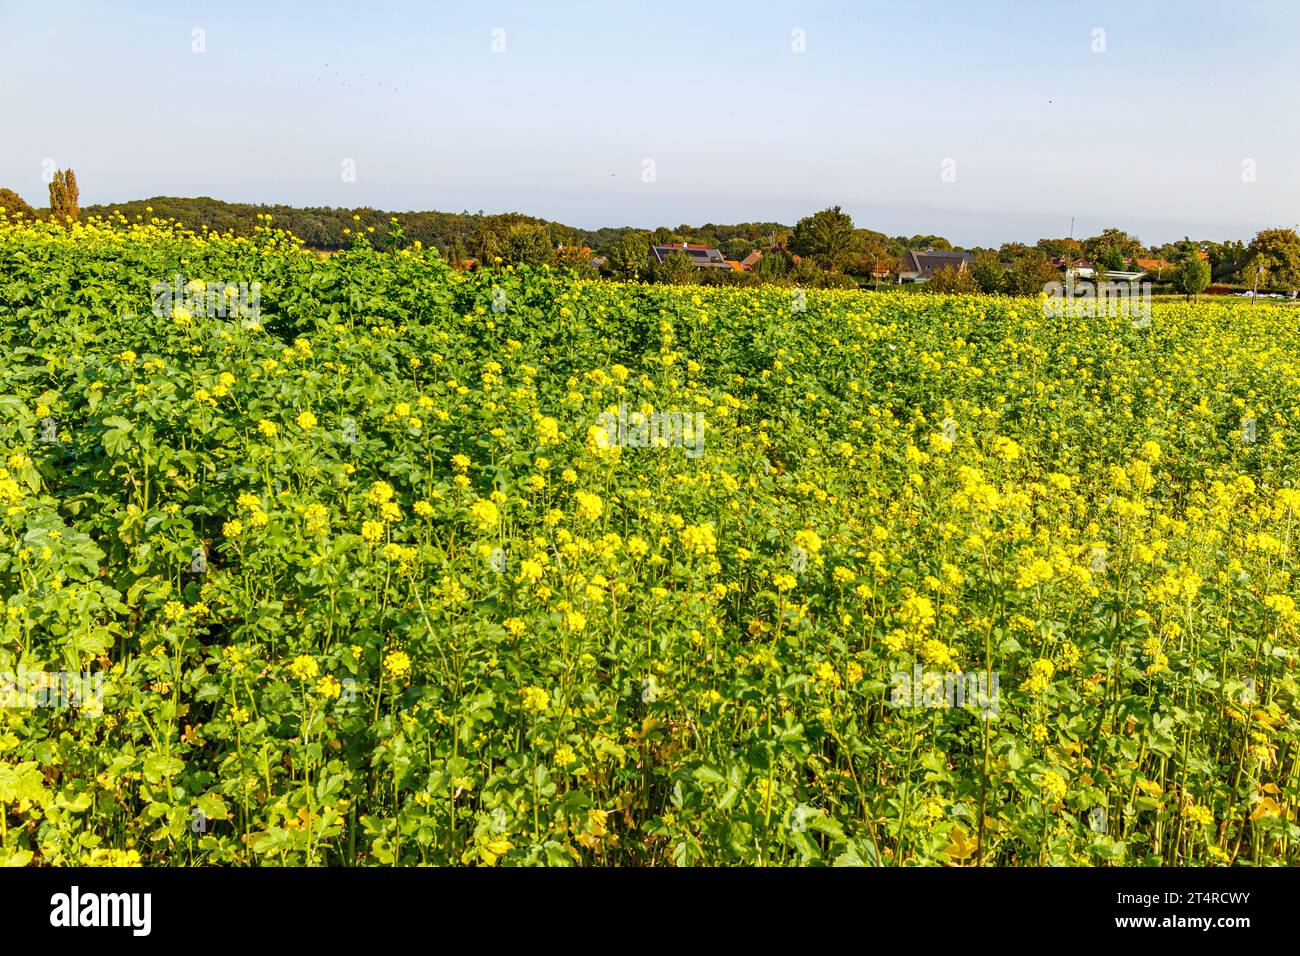 Canola olandese paesaggio agricolo panoramico con alberi autunnali sullo sfondo, piantagione di piante con fiori gialli che ricoprono terreno pianeggiante, soleggiato d Foto Stock